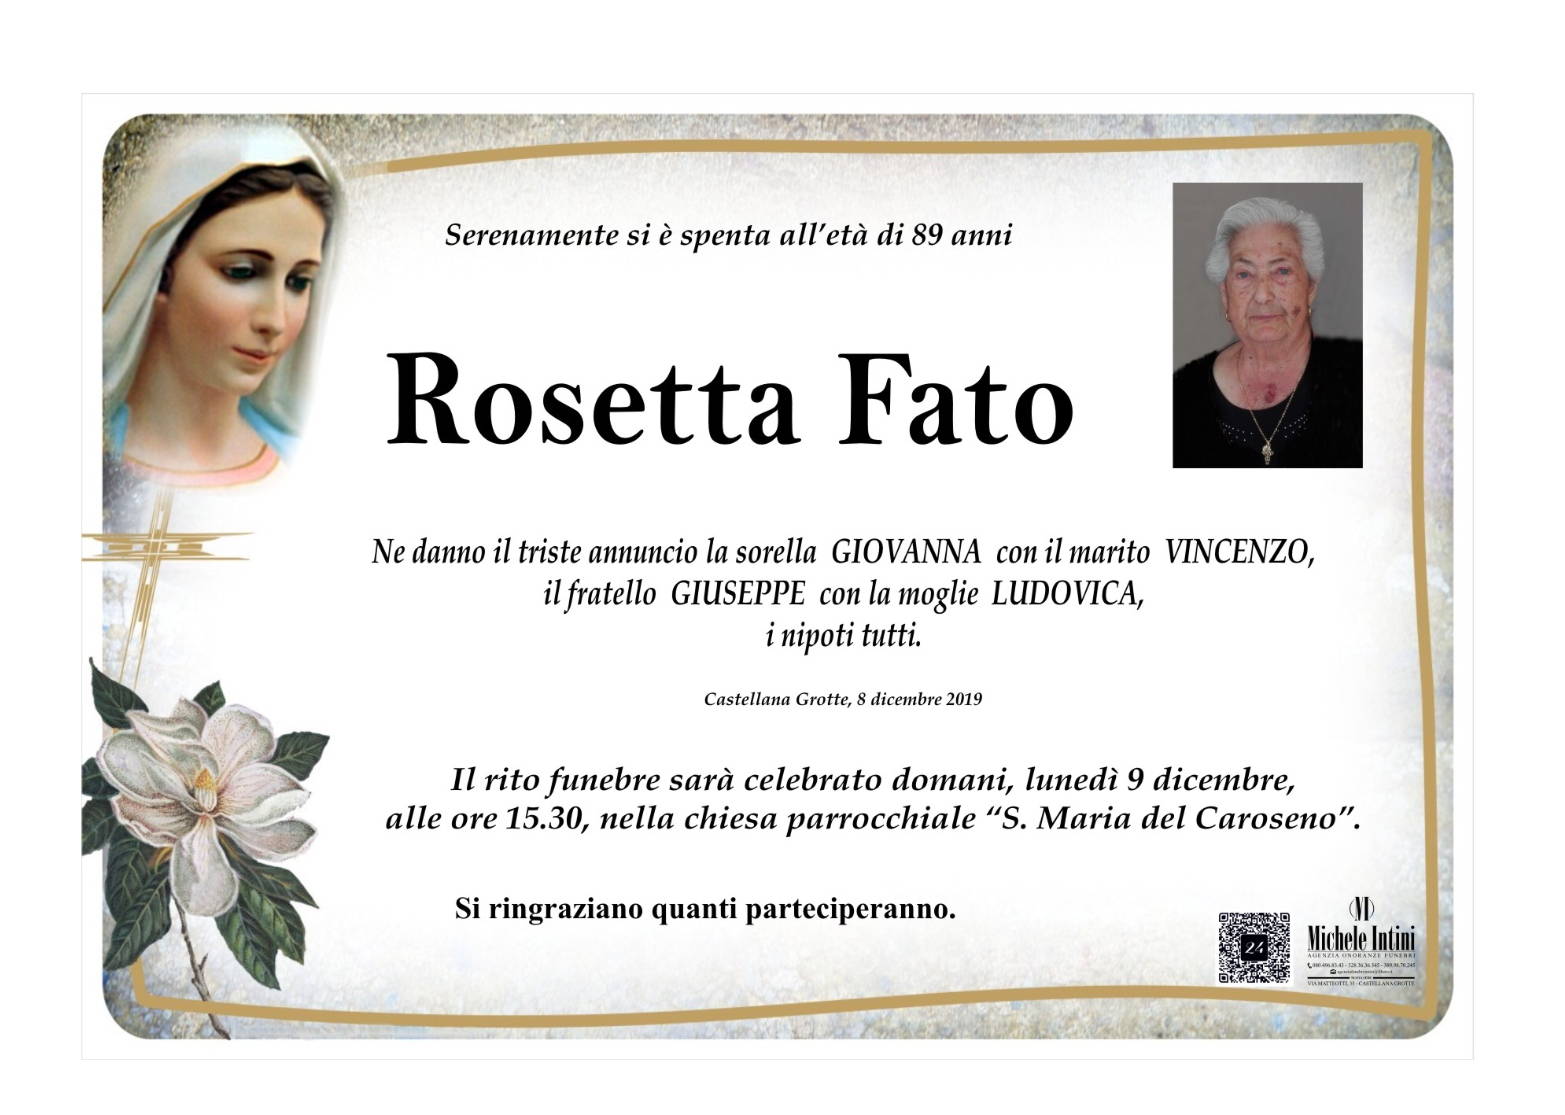 Rosetta Fato